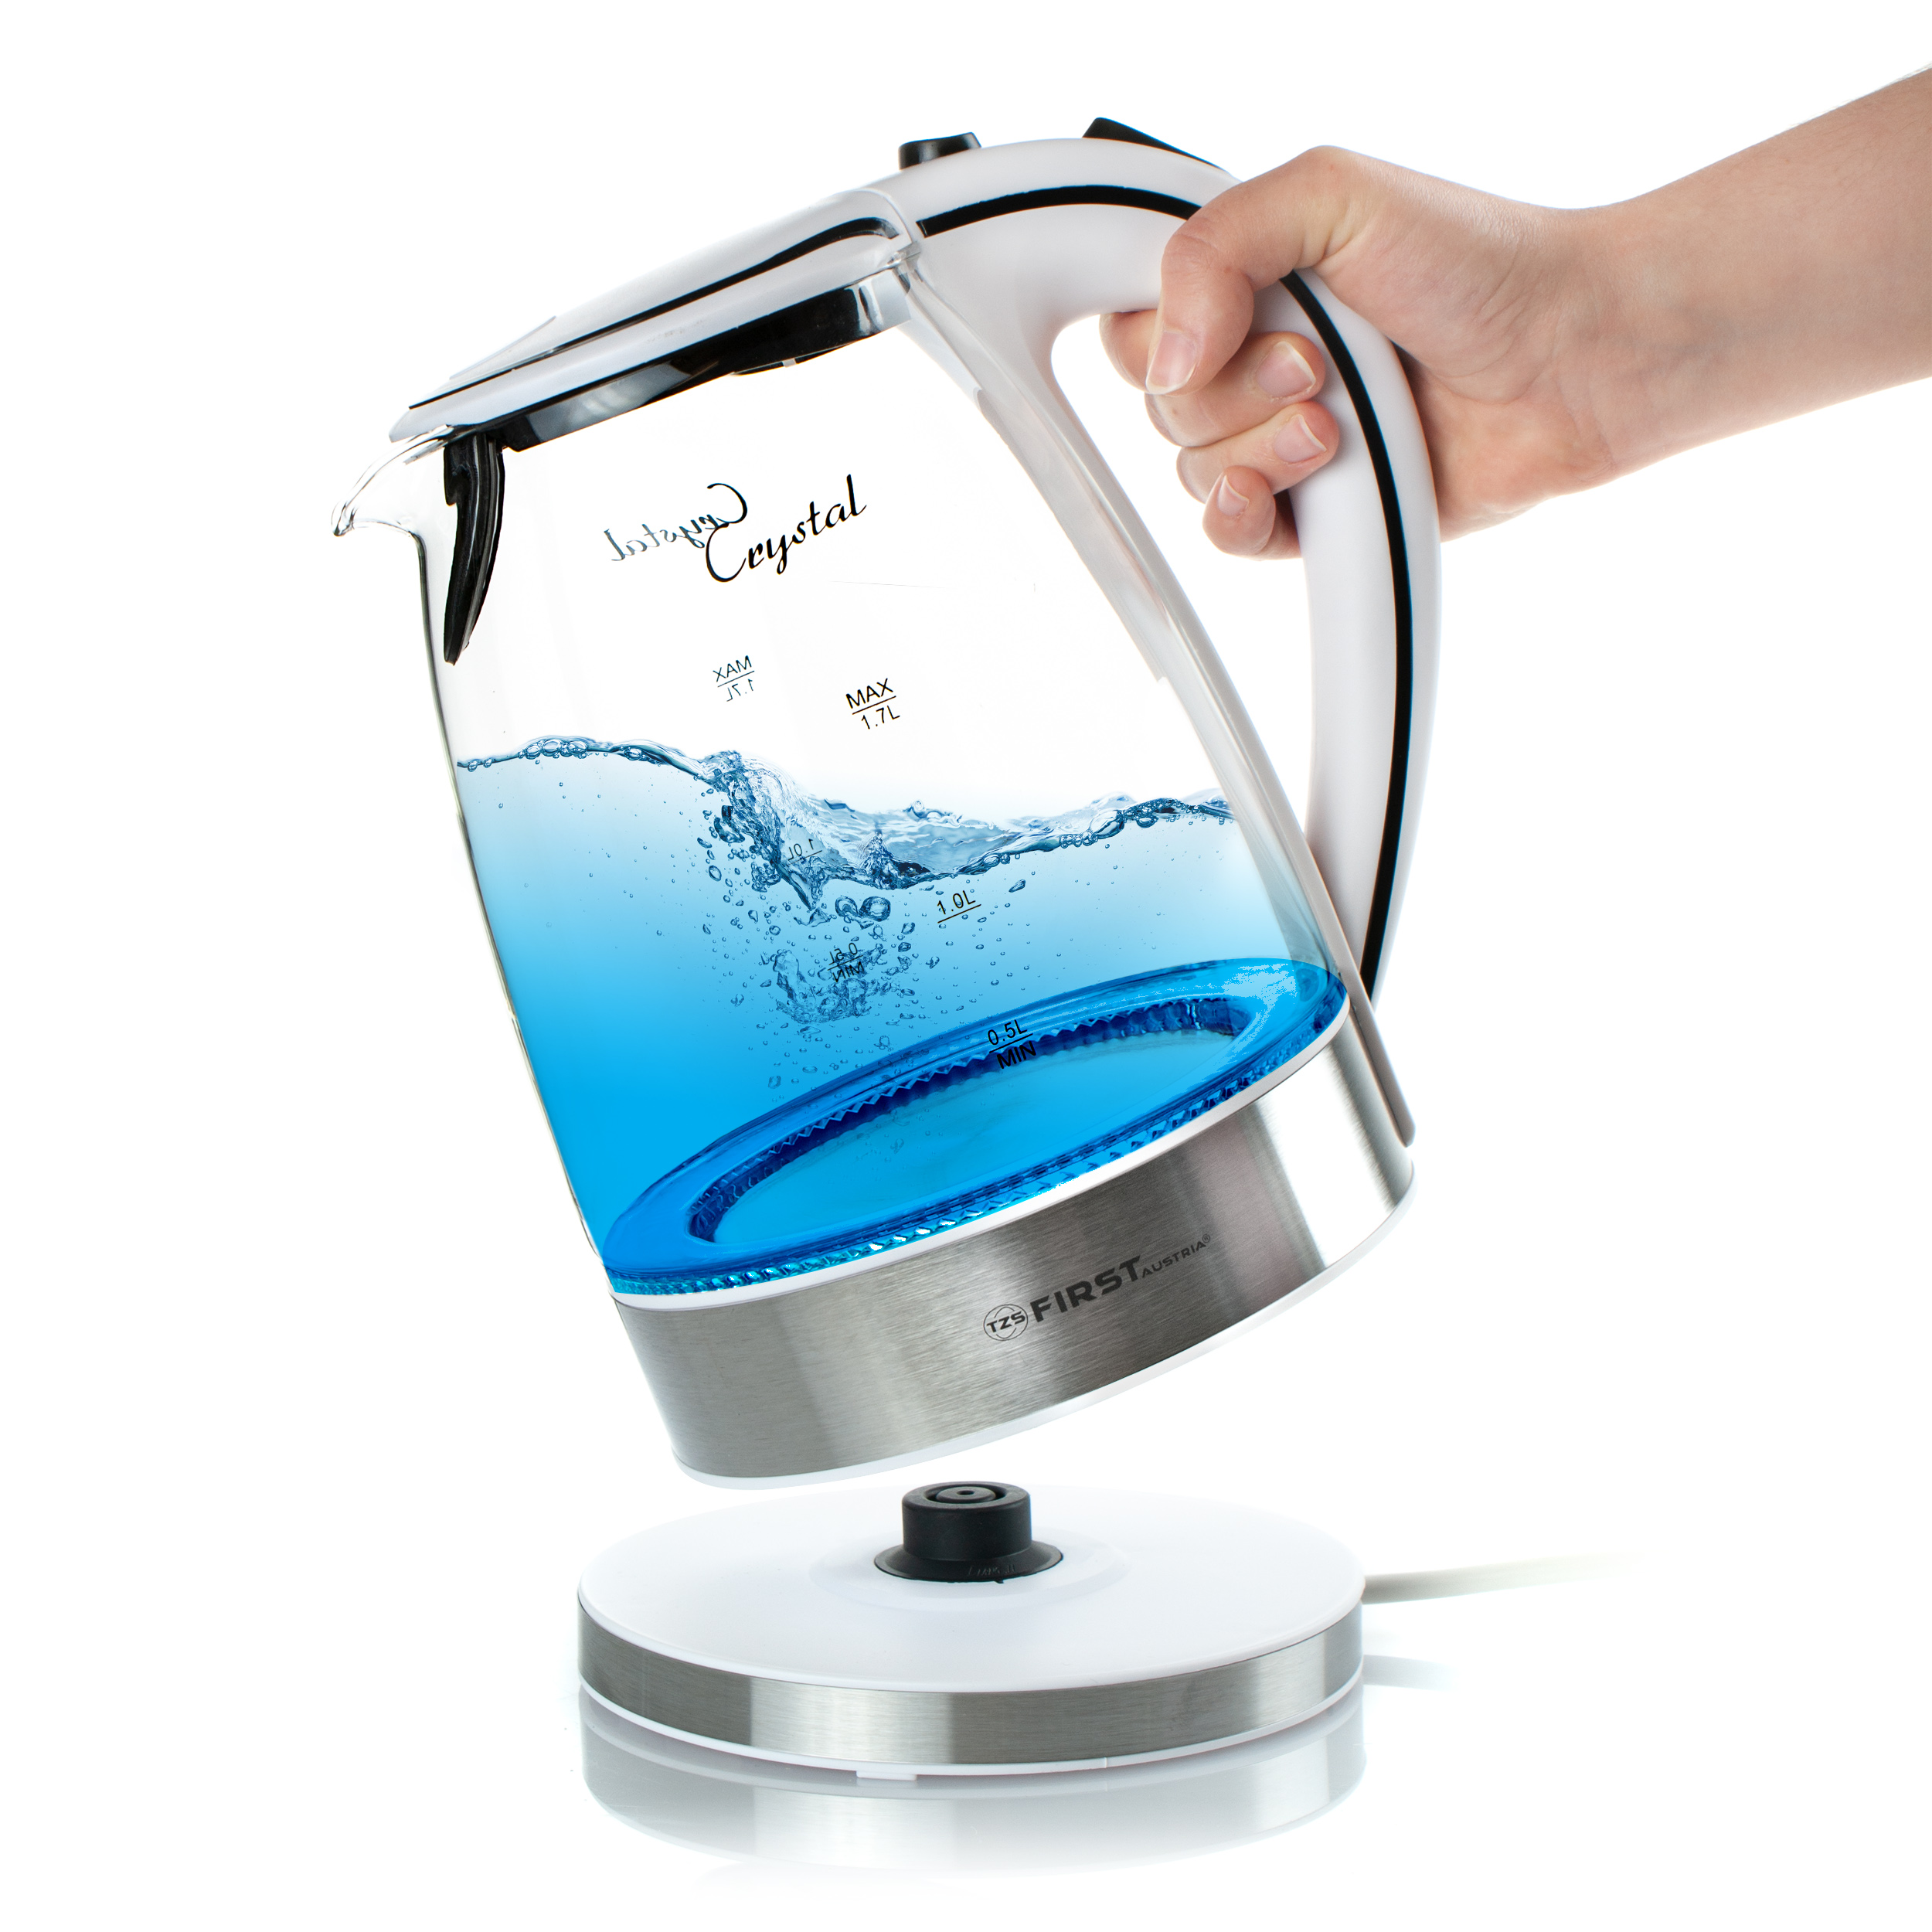 Glass kettle 2200 watts | 1.7 liters